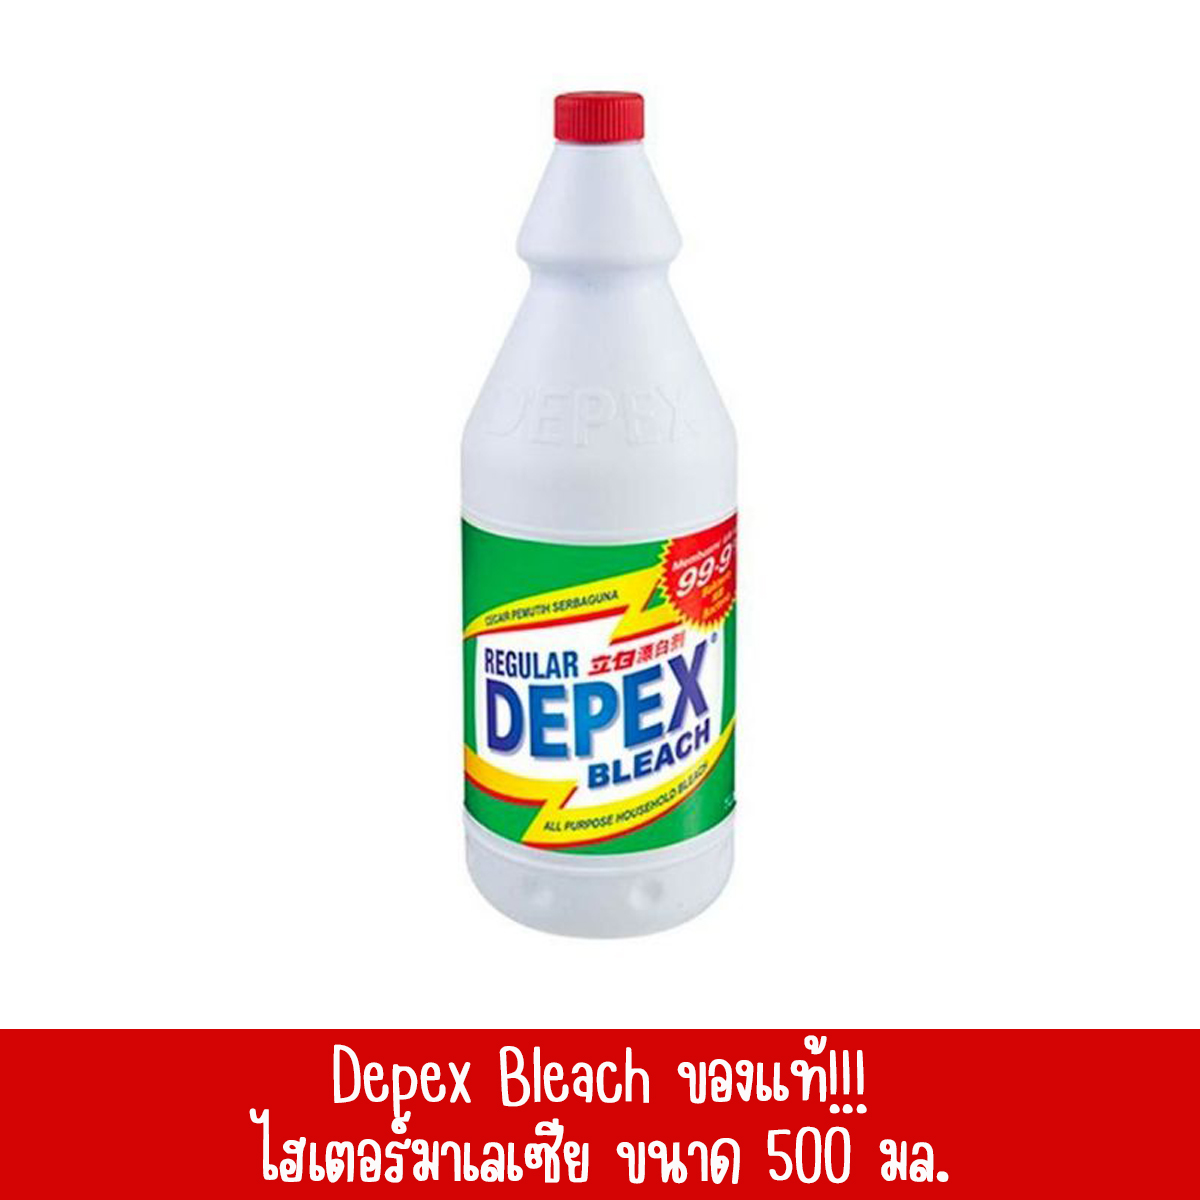 DEPEX น้ำยาฟอกผ้าขาวมาเลย์ ขนาด 500 มล. ของแท้ 100%  จำนวน แพ็ค 2 ขวด